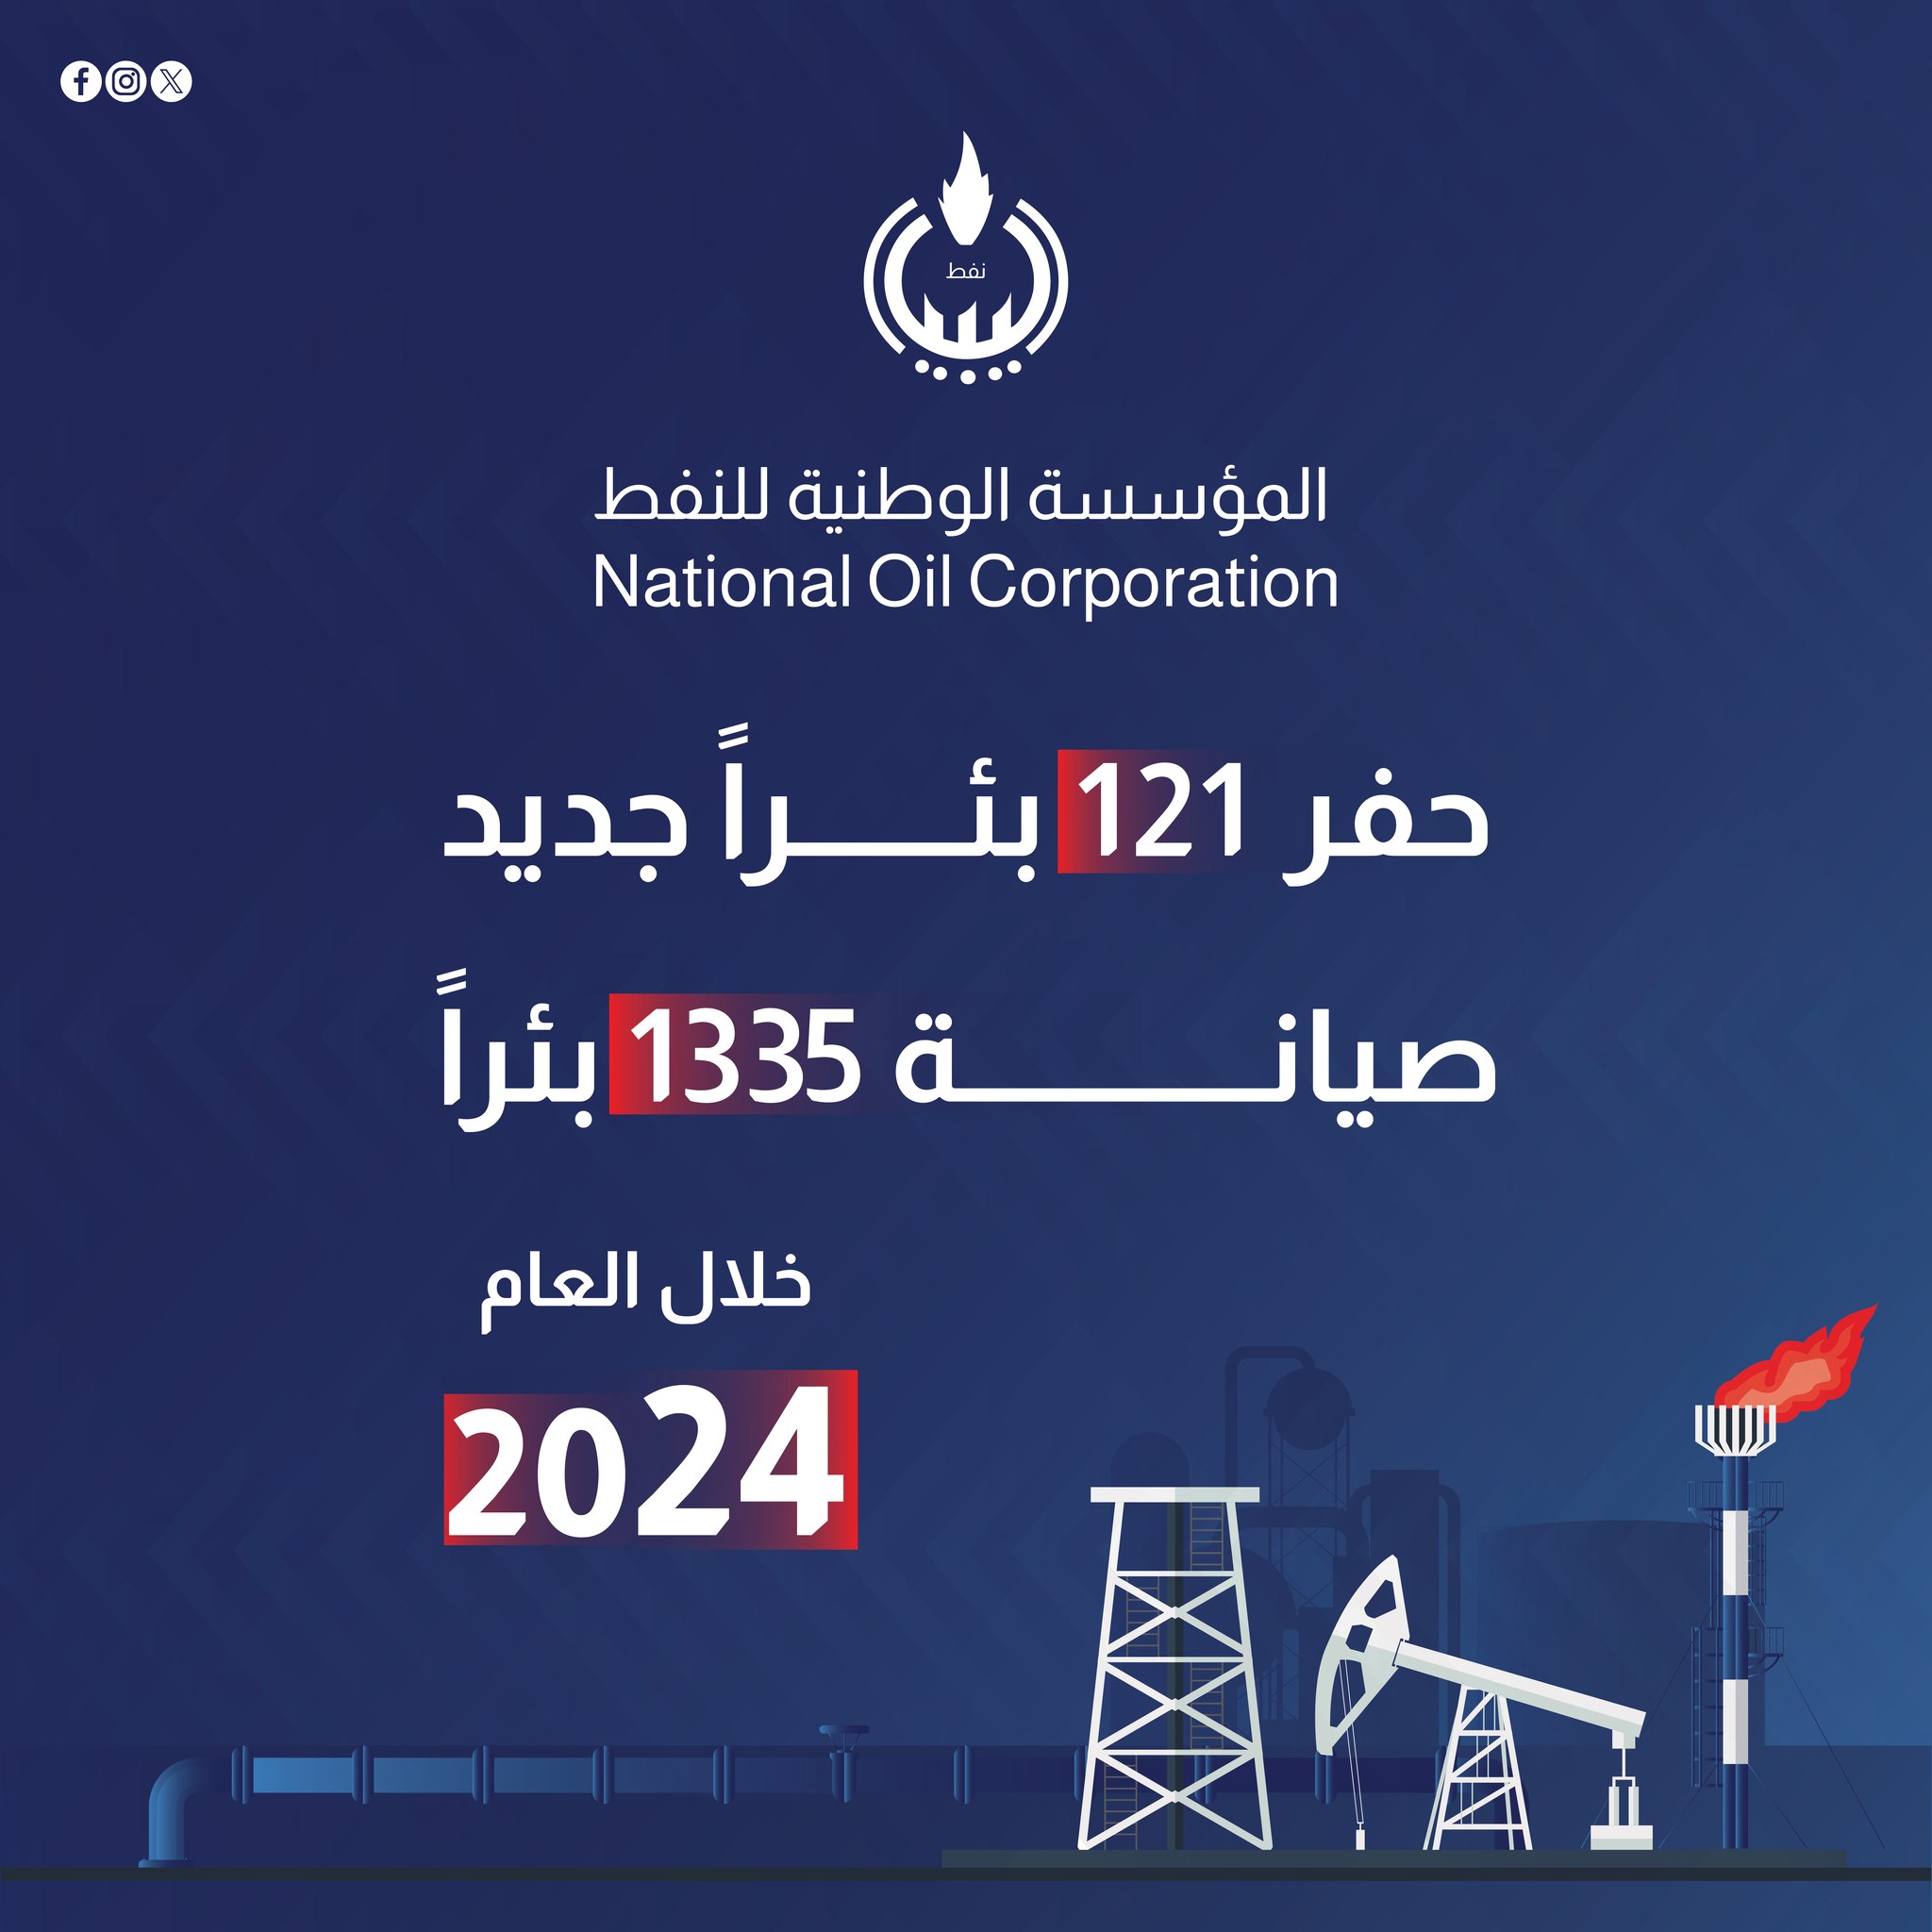 المؤسسة الوطنية للنفط تعلن حفر 121 بئر جديد وصيانة نحو 1335 بئر خلال عام 2024 .  